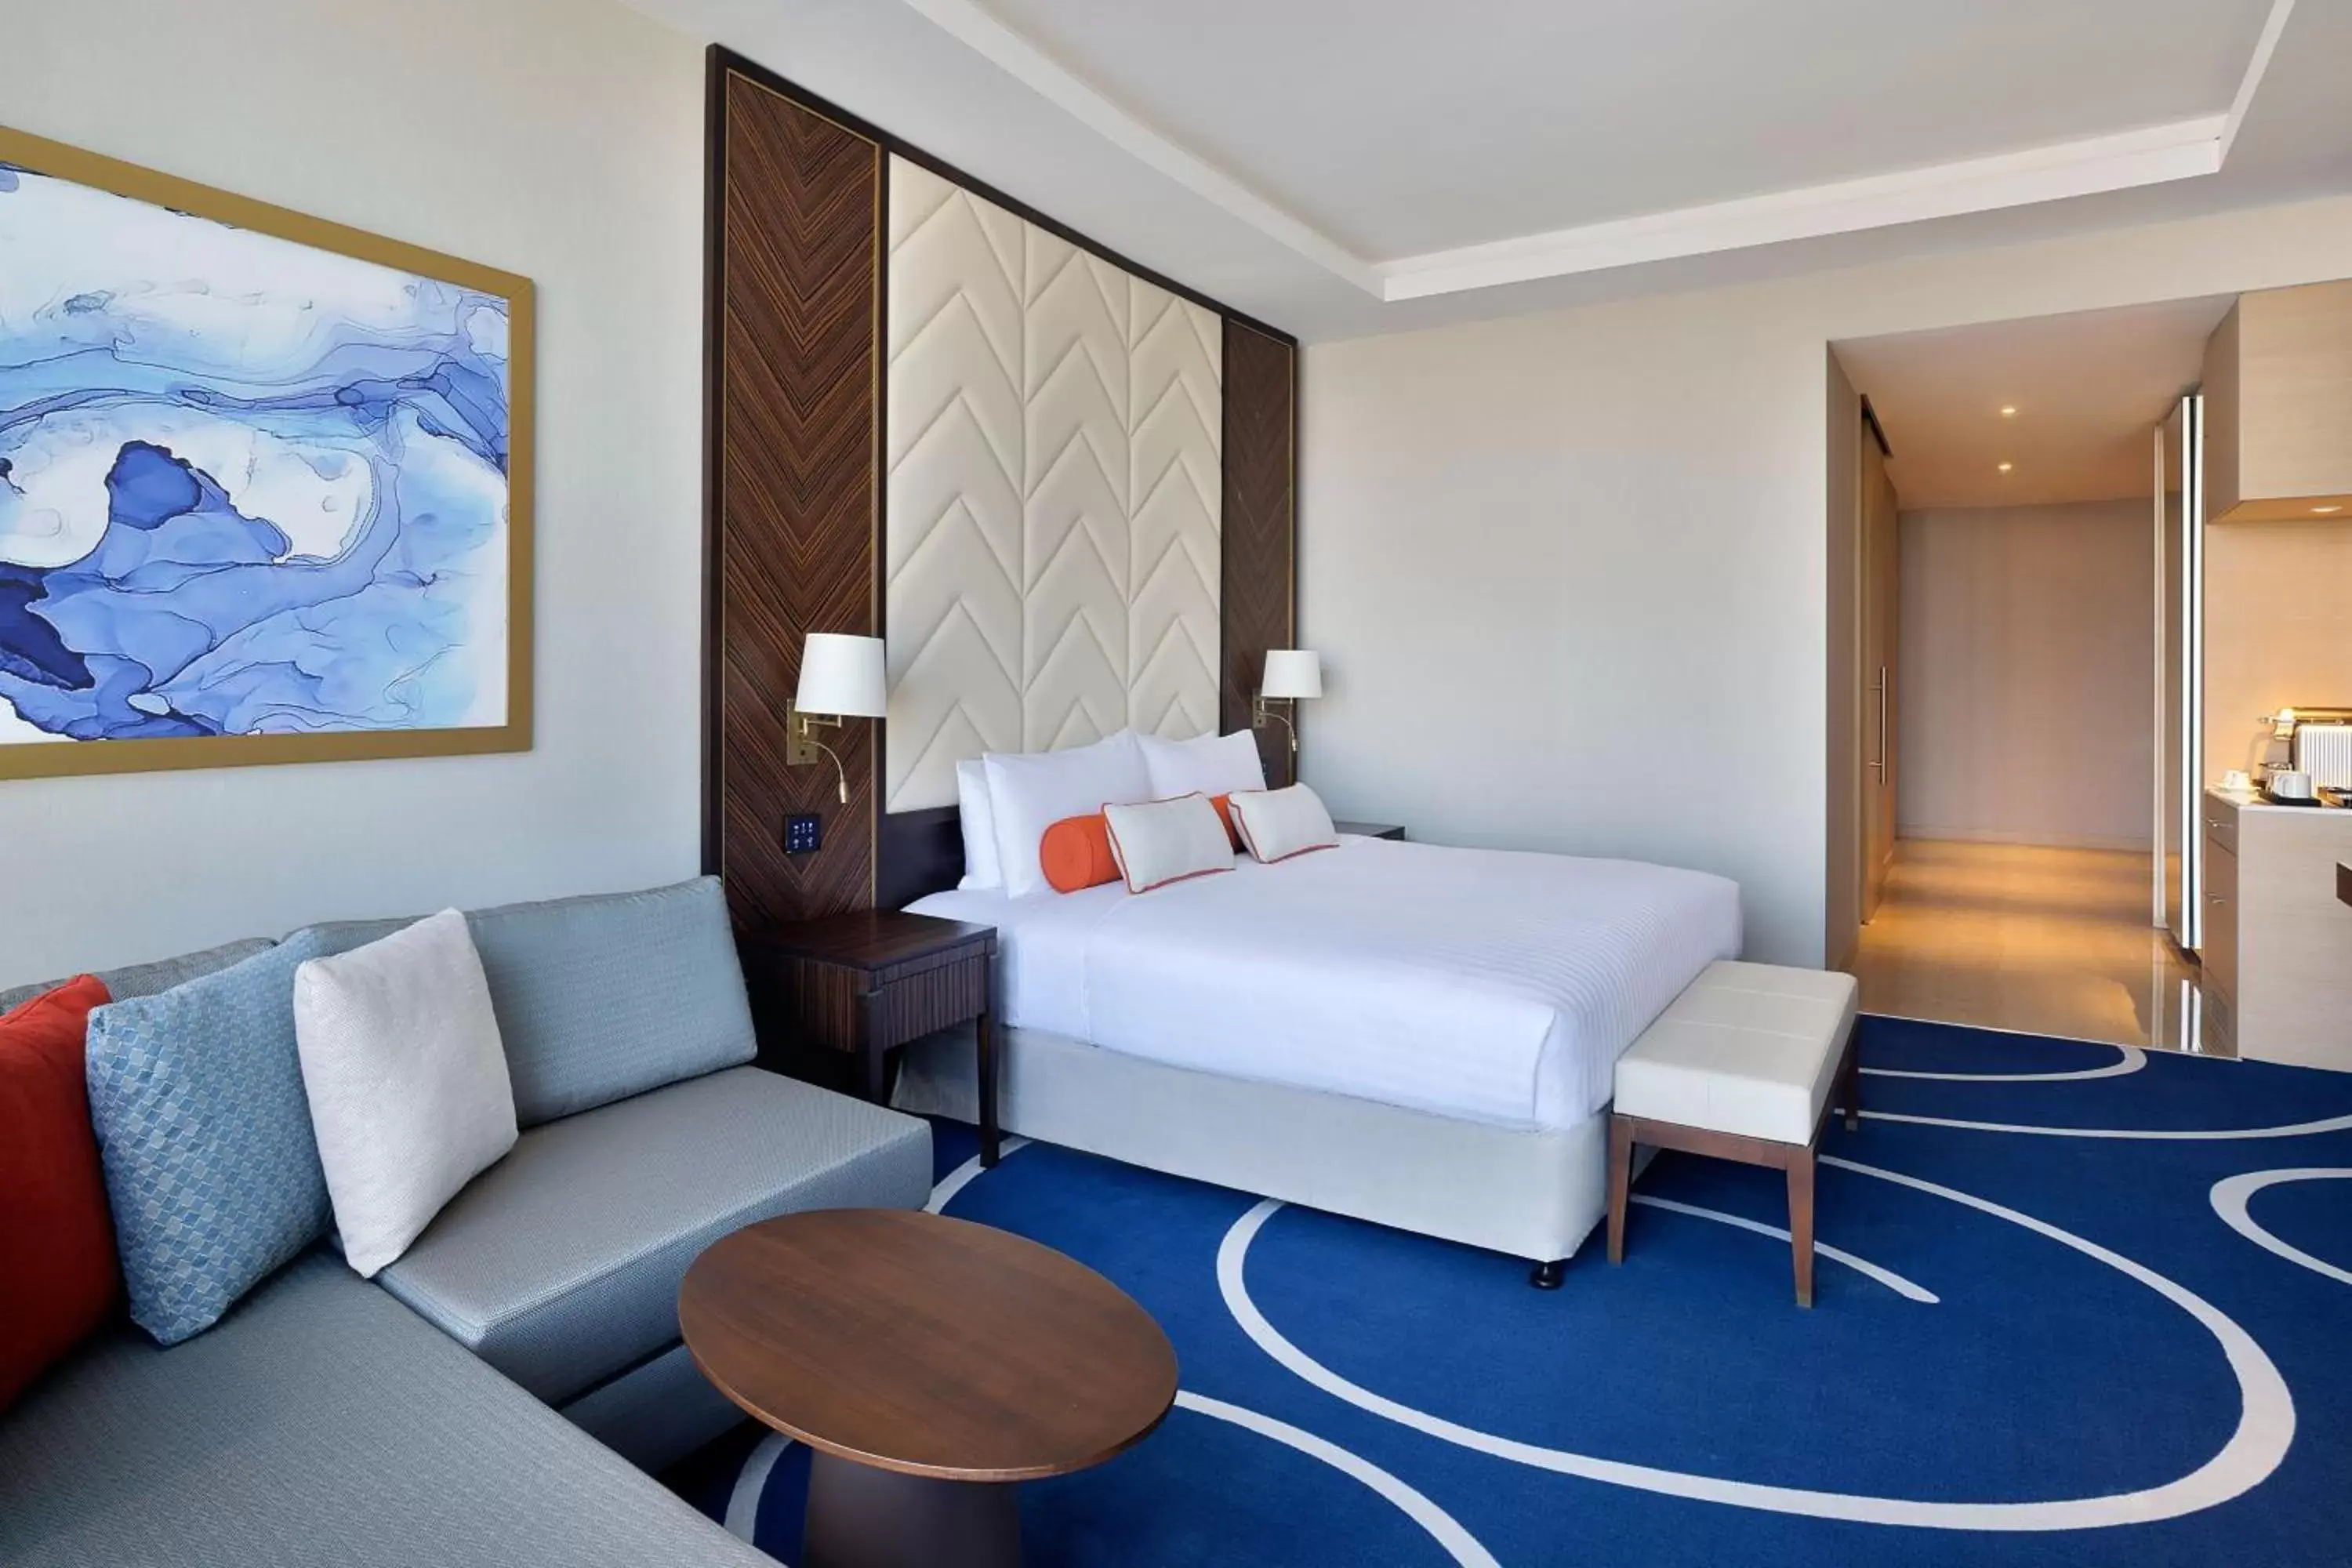 Bedroom in Jeddah Marriott Hotel Madinah Road